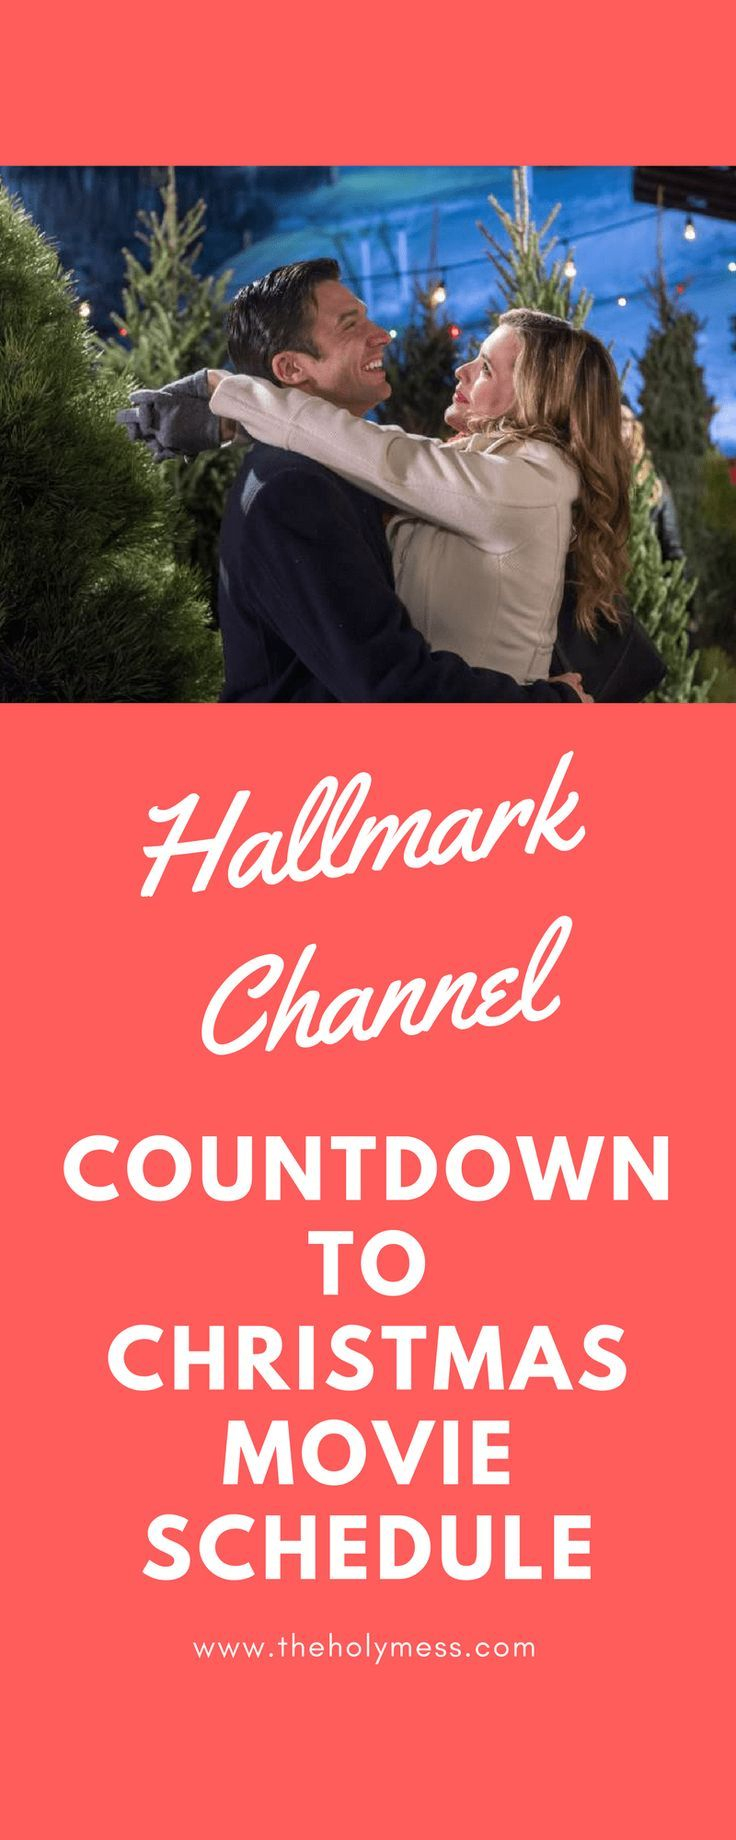 Hallmark Channel Countdown To Christmas Movie Schedule